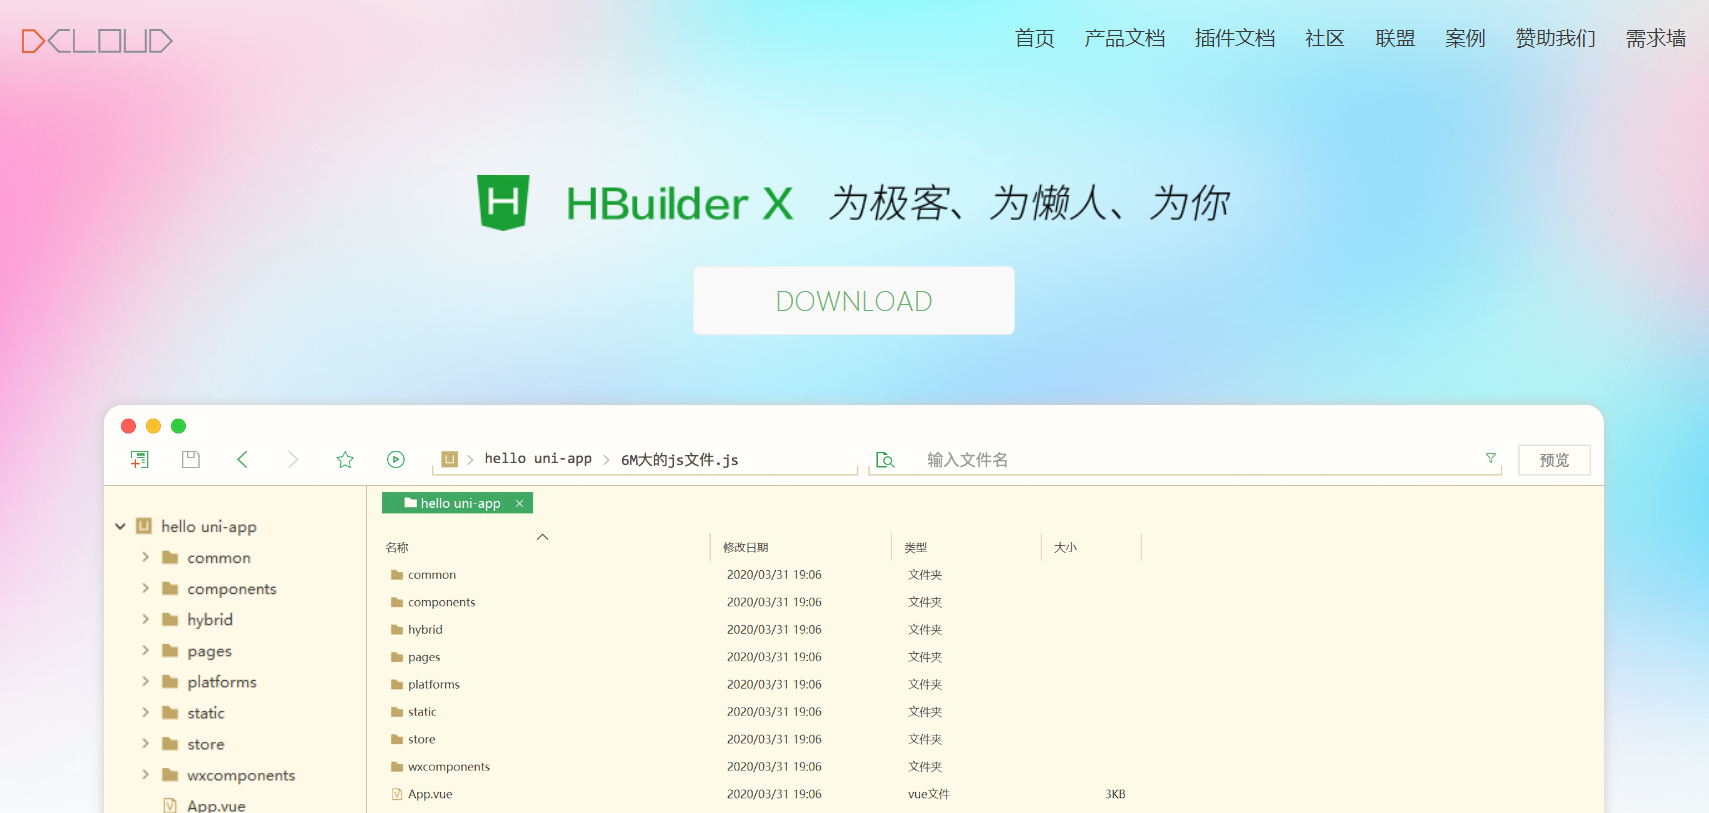 HbuilderX学习——熟悉产品主要特征